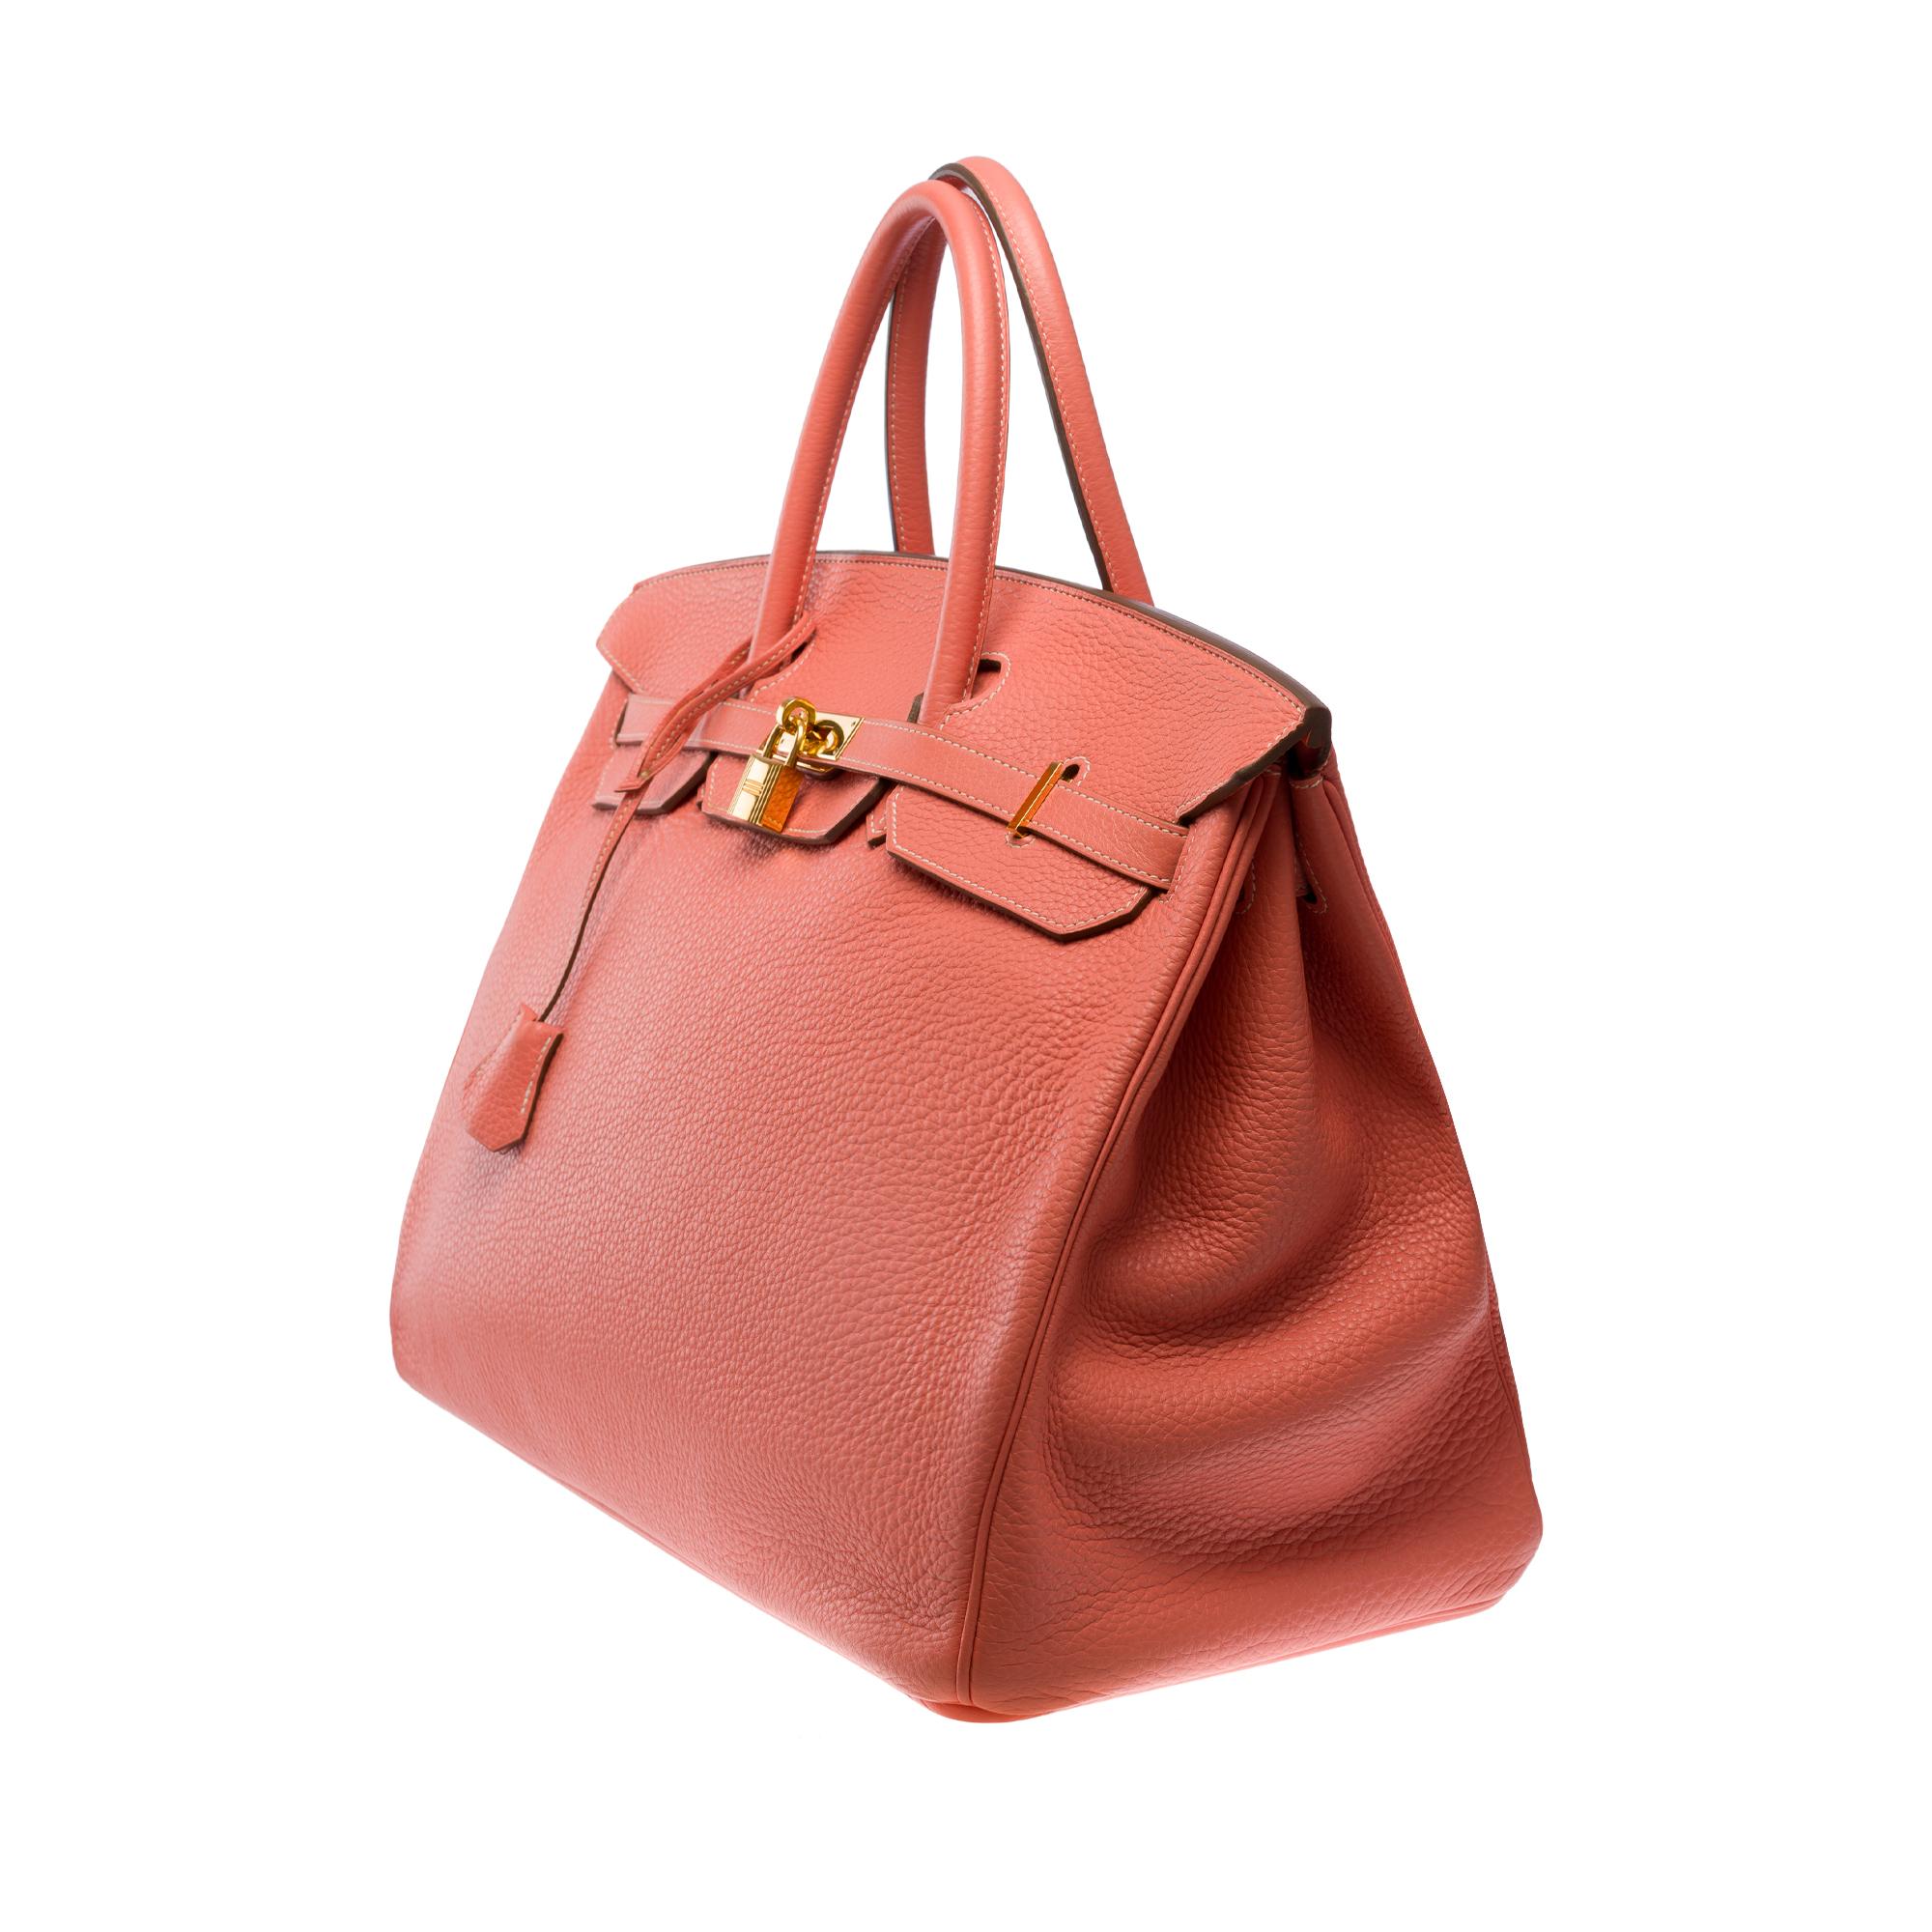 Orange Stunning Hermes Birkin 40cm handbag in Rose Tea Togo leather, GHW For Sale